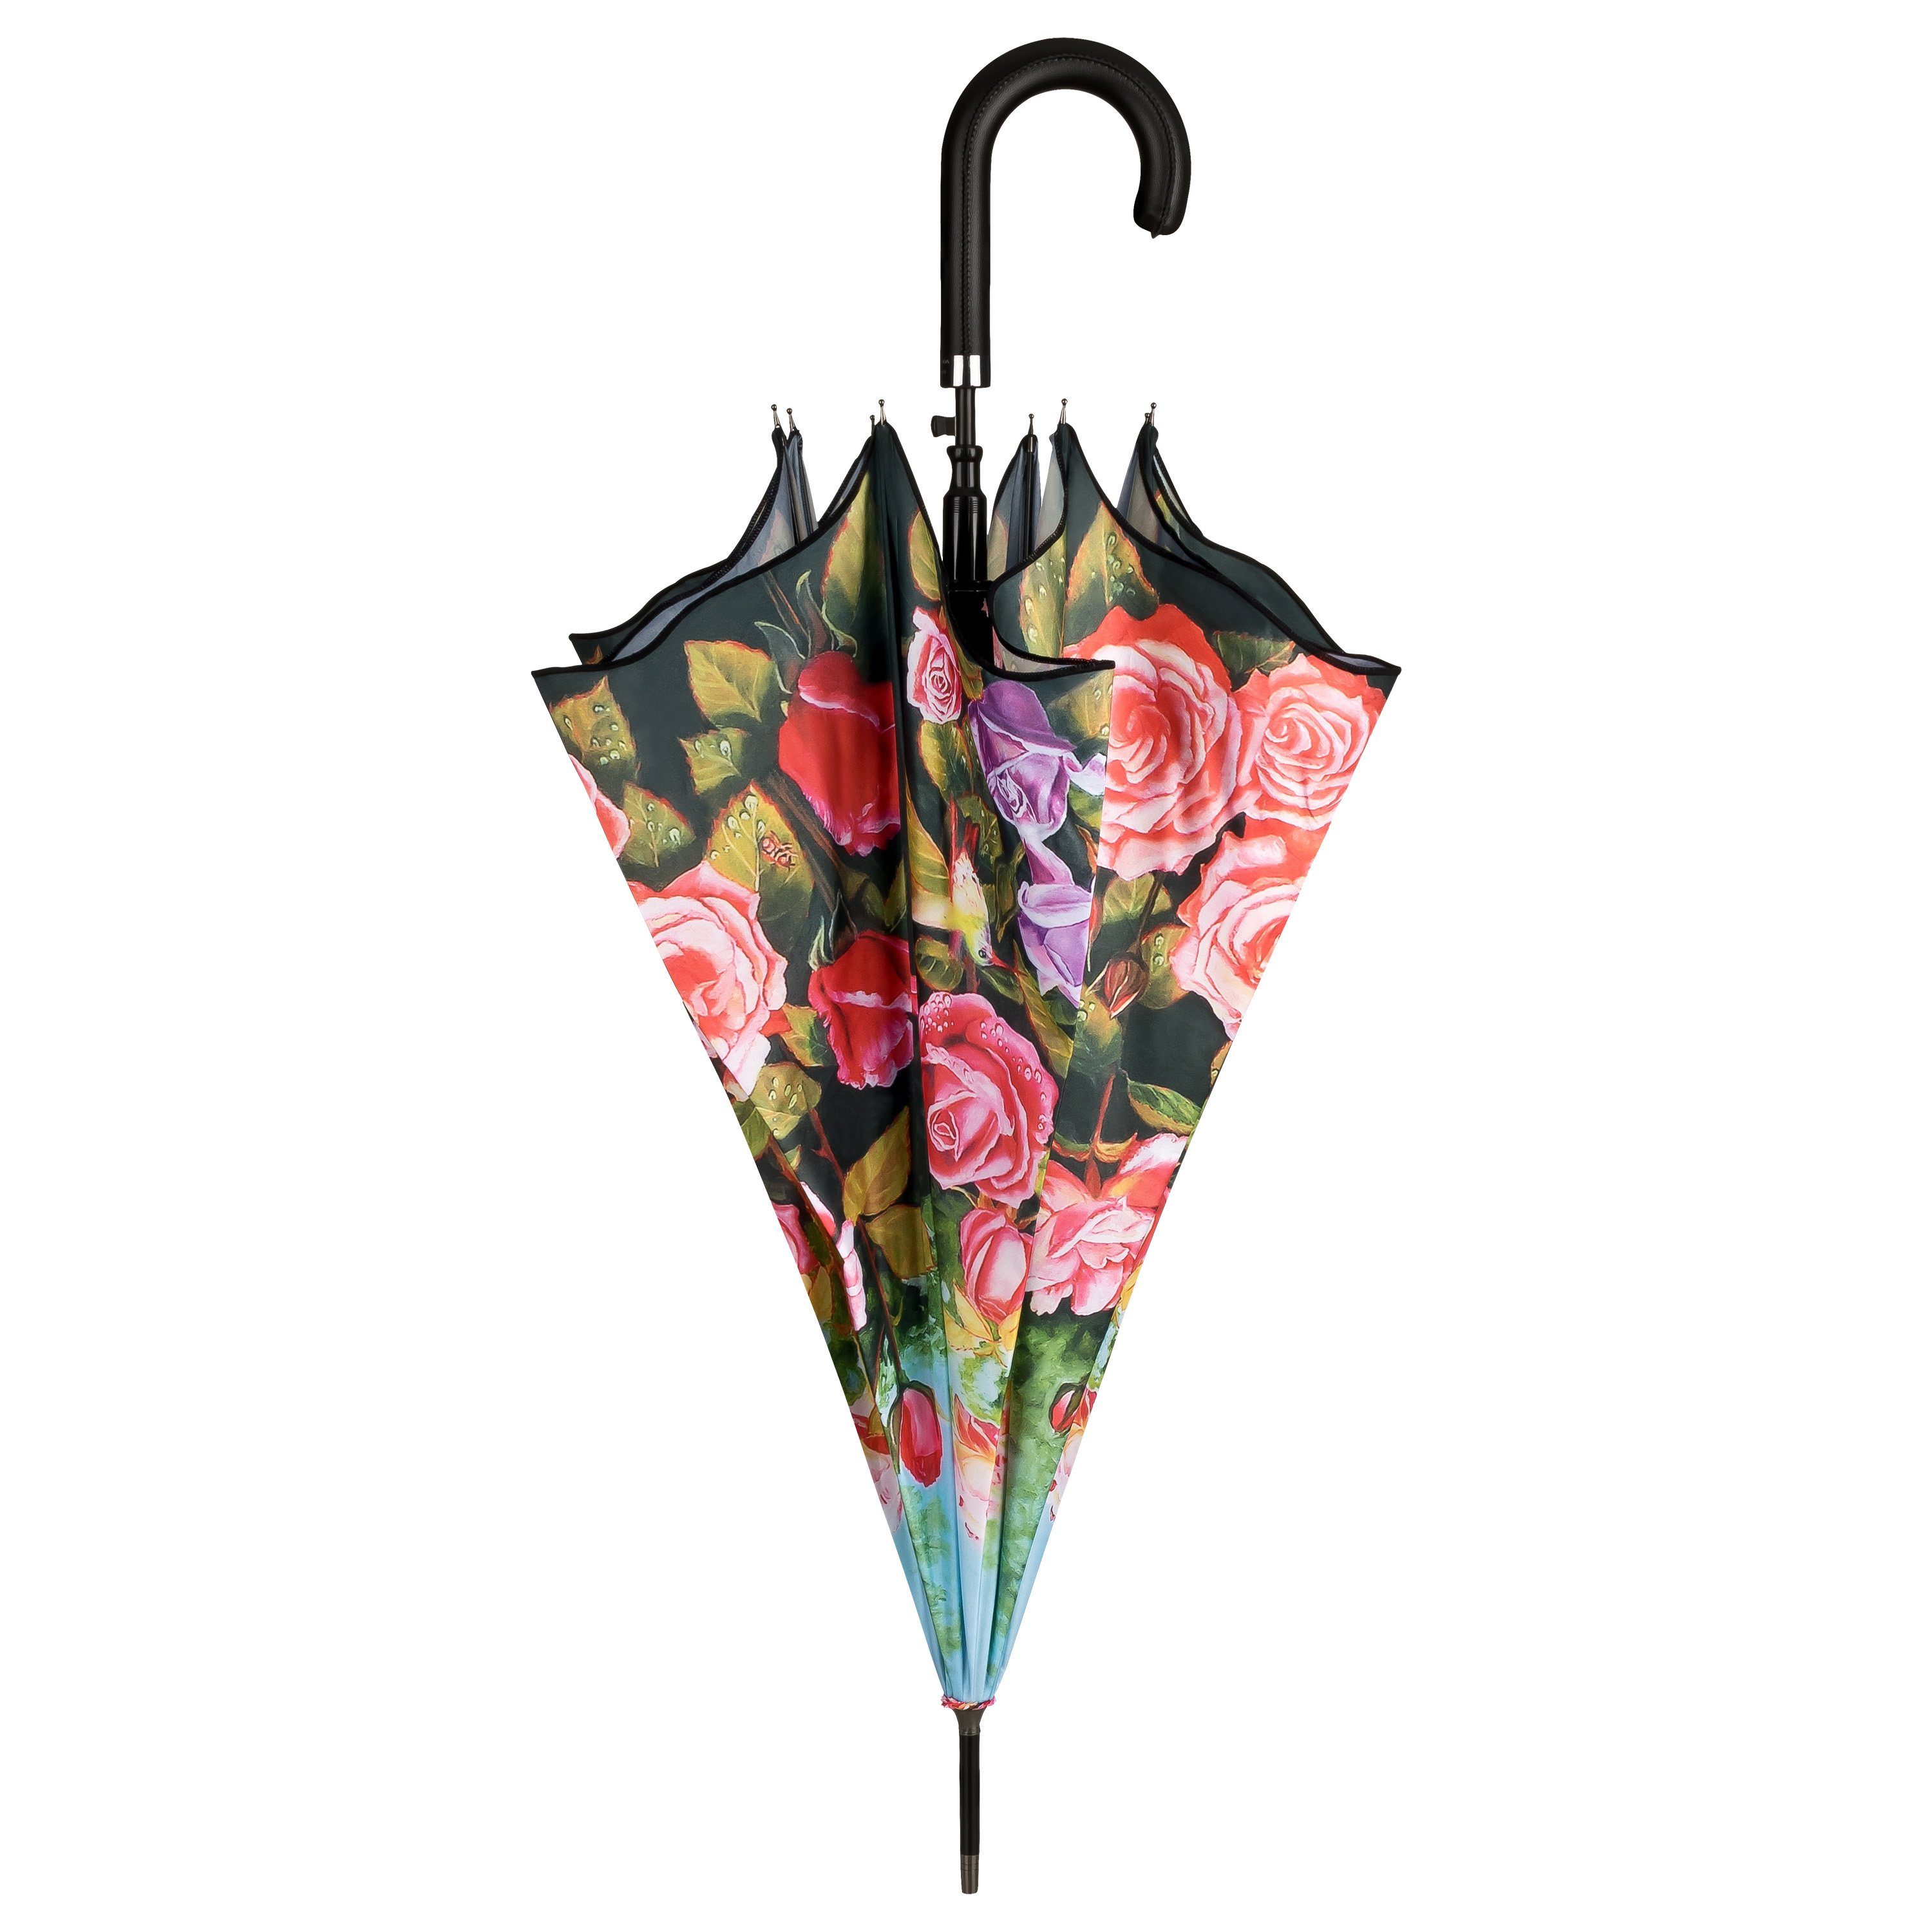 Damen Blumen, Lilienfeld VON von Windfest LILIENFELD Blumenmuster Regenschirm Garten Auf-Automatik Stabil Rosen Stockregenschirm